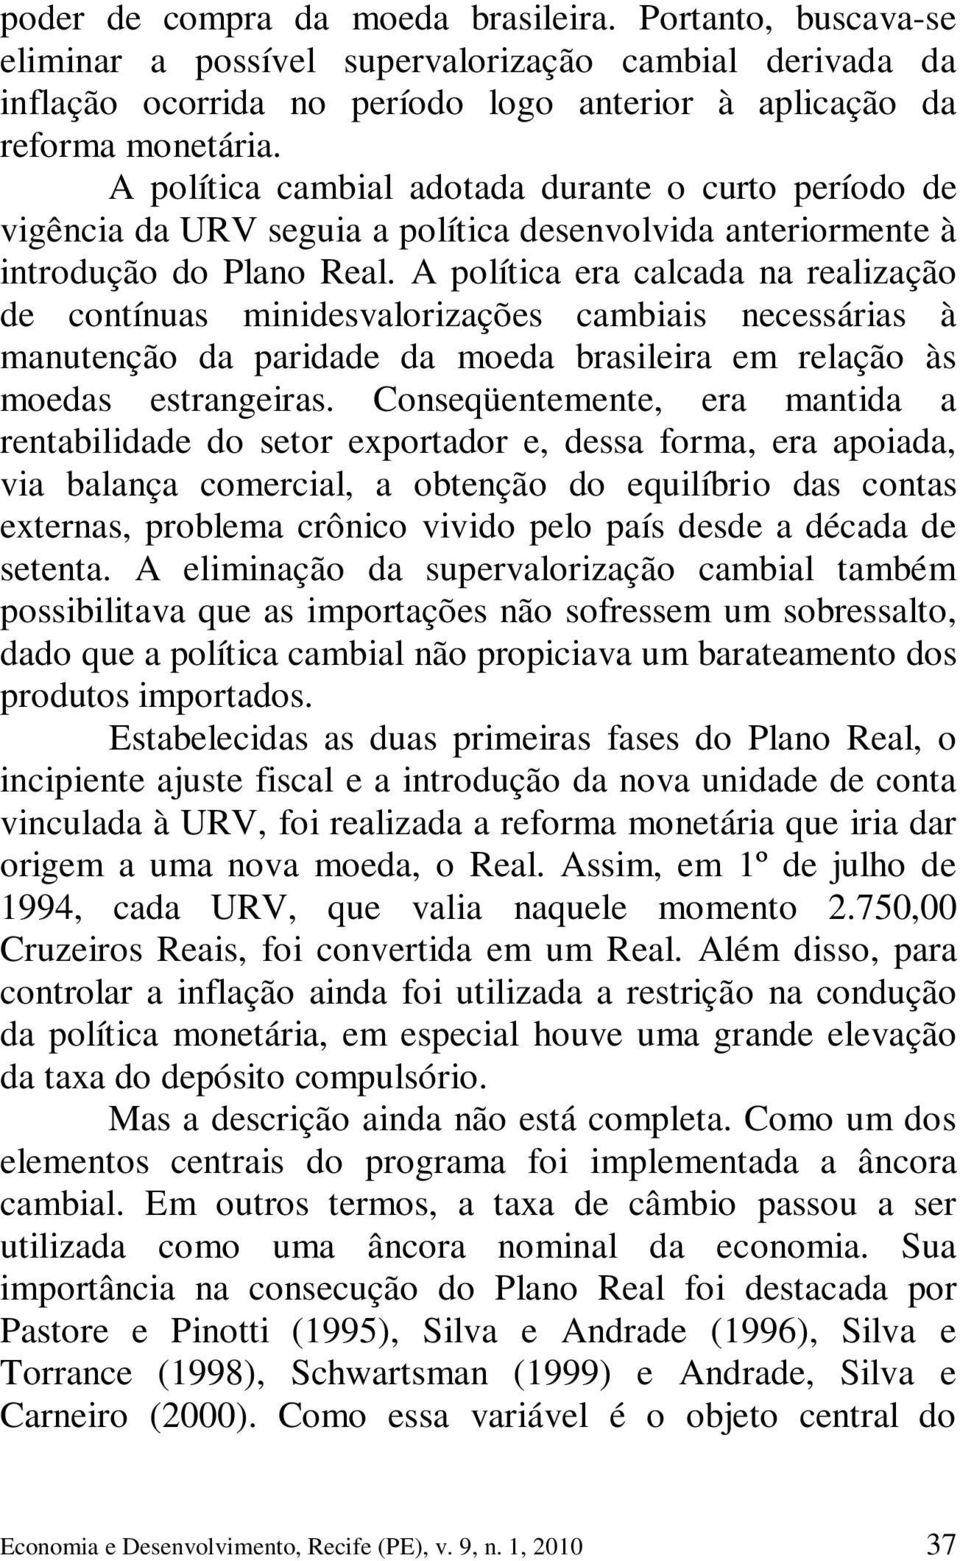 A política era calcada na realização de contínuas minidesvalorizações cambiais necessárias à manutenção da paridade da moeda brasileira em relação às moedas estrangeiras.